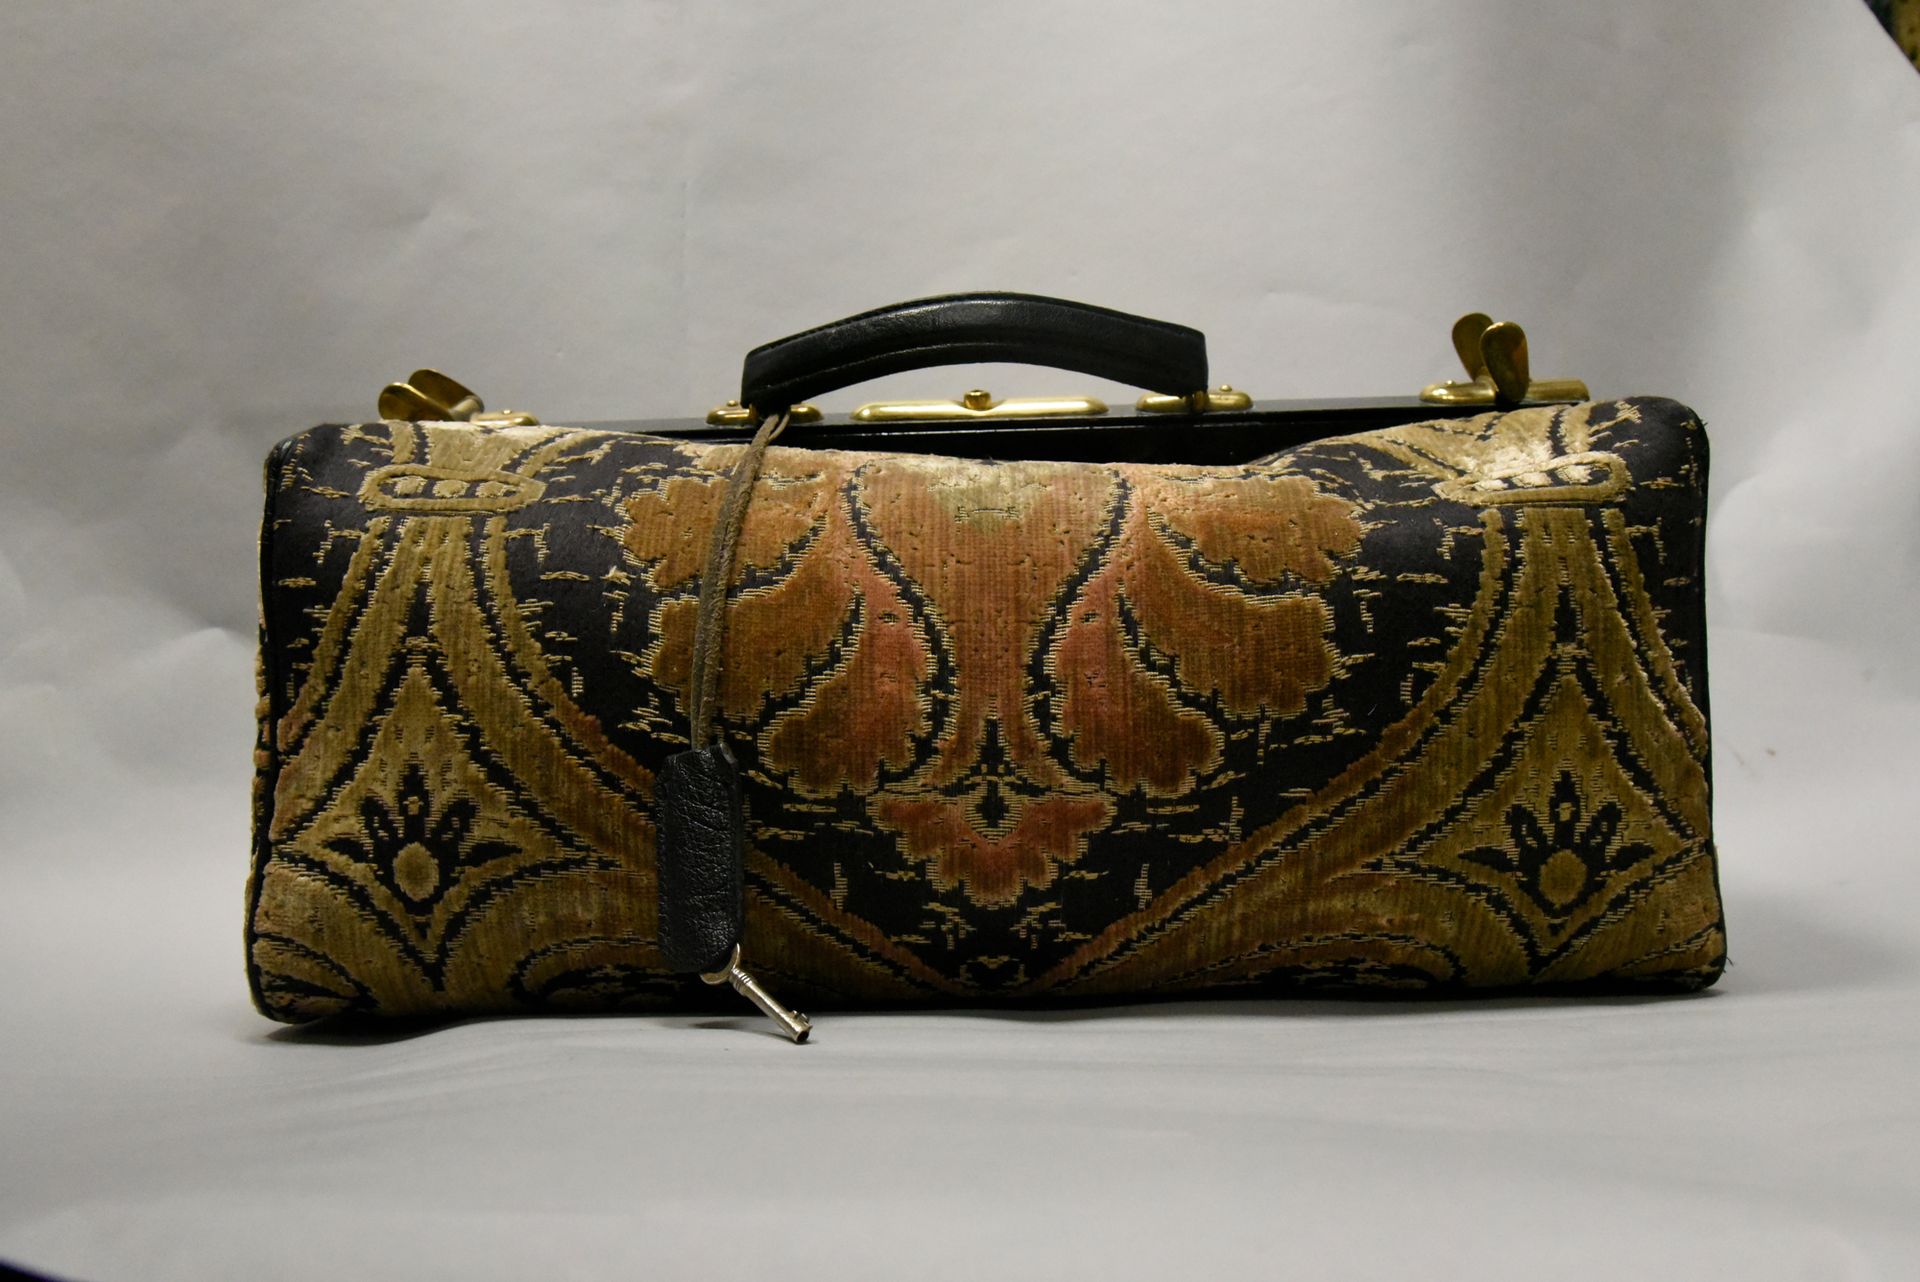 Null ANONYMOUS 复古旅行包，采用天鹅绒、金属和黑色皮革制成。有些磨损。46 x 20 厘米。